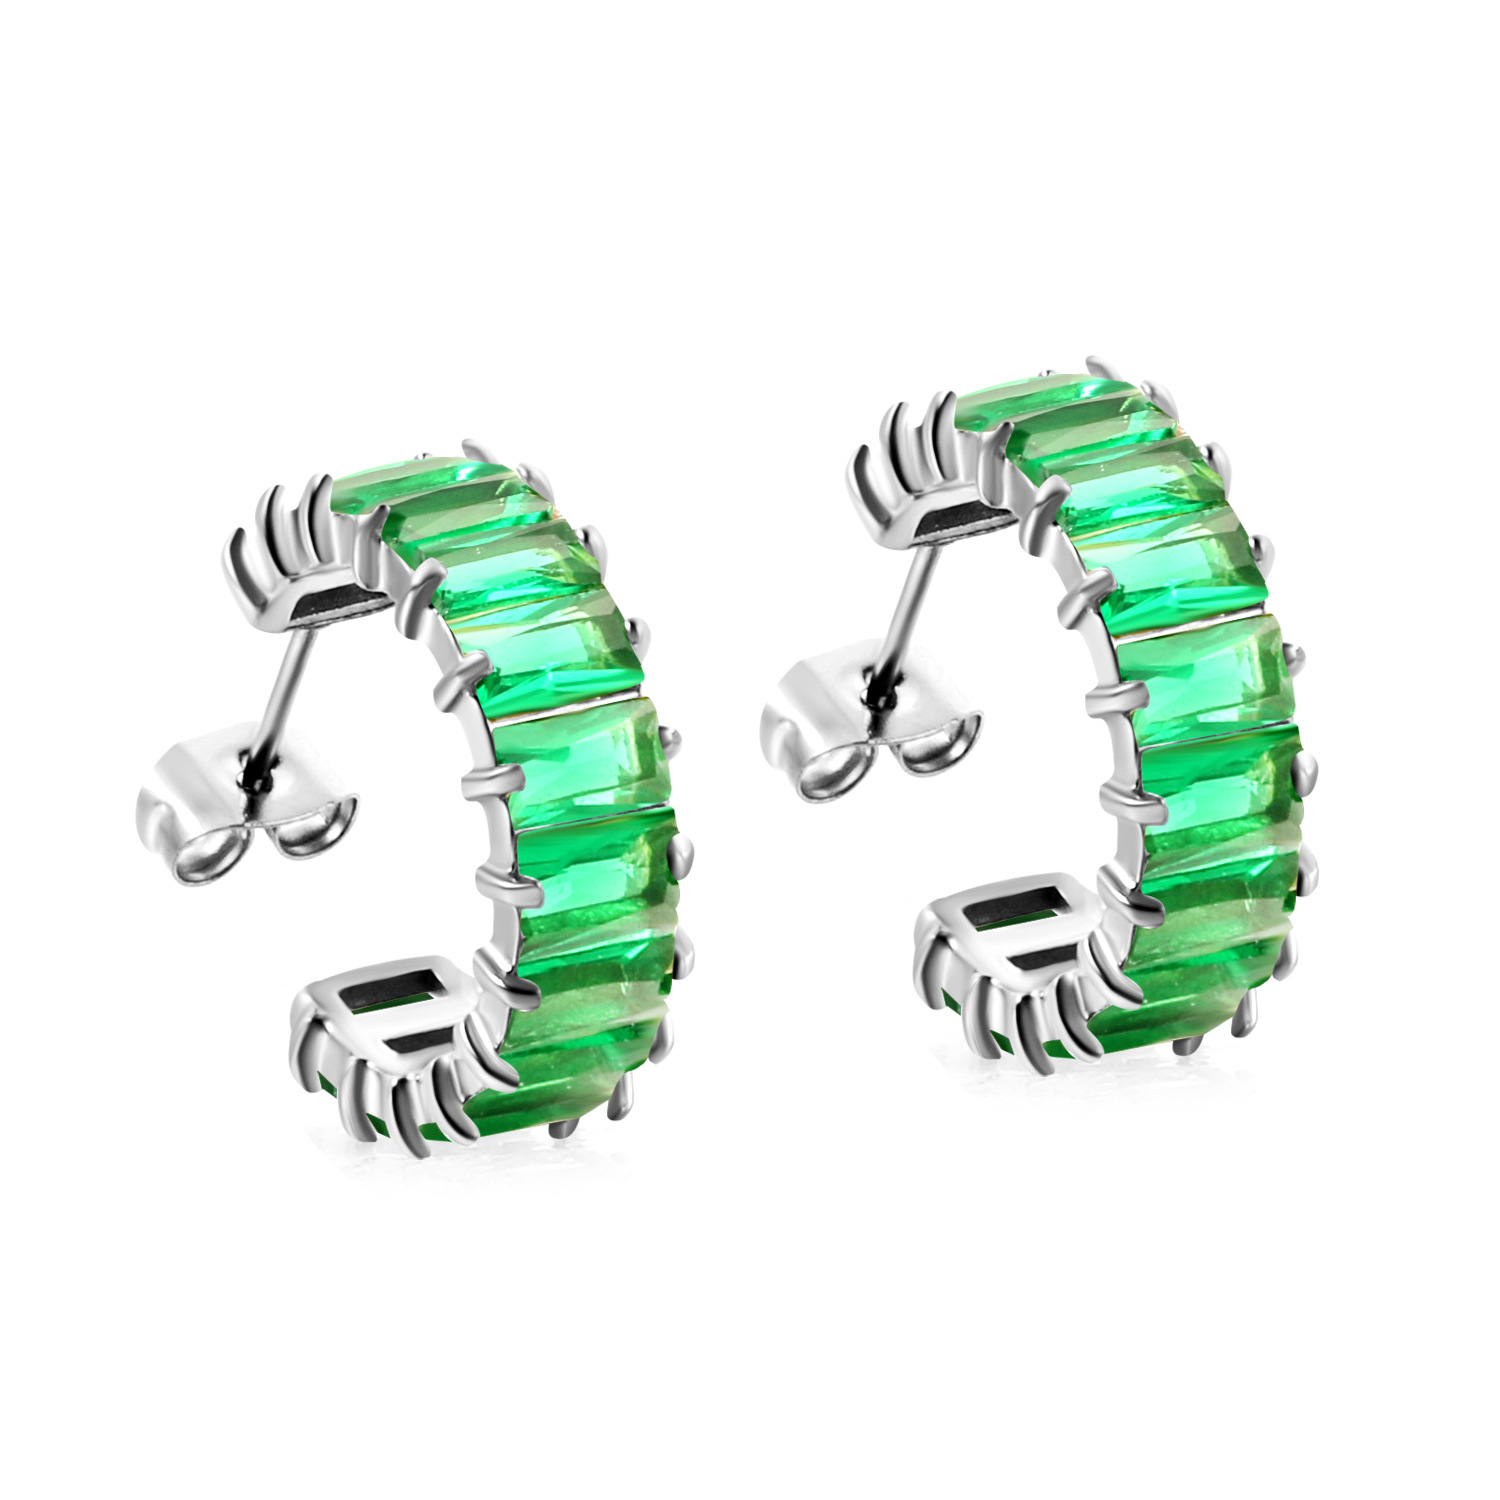 5:Green diamond earrings, steel color